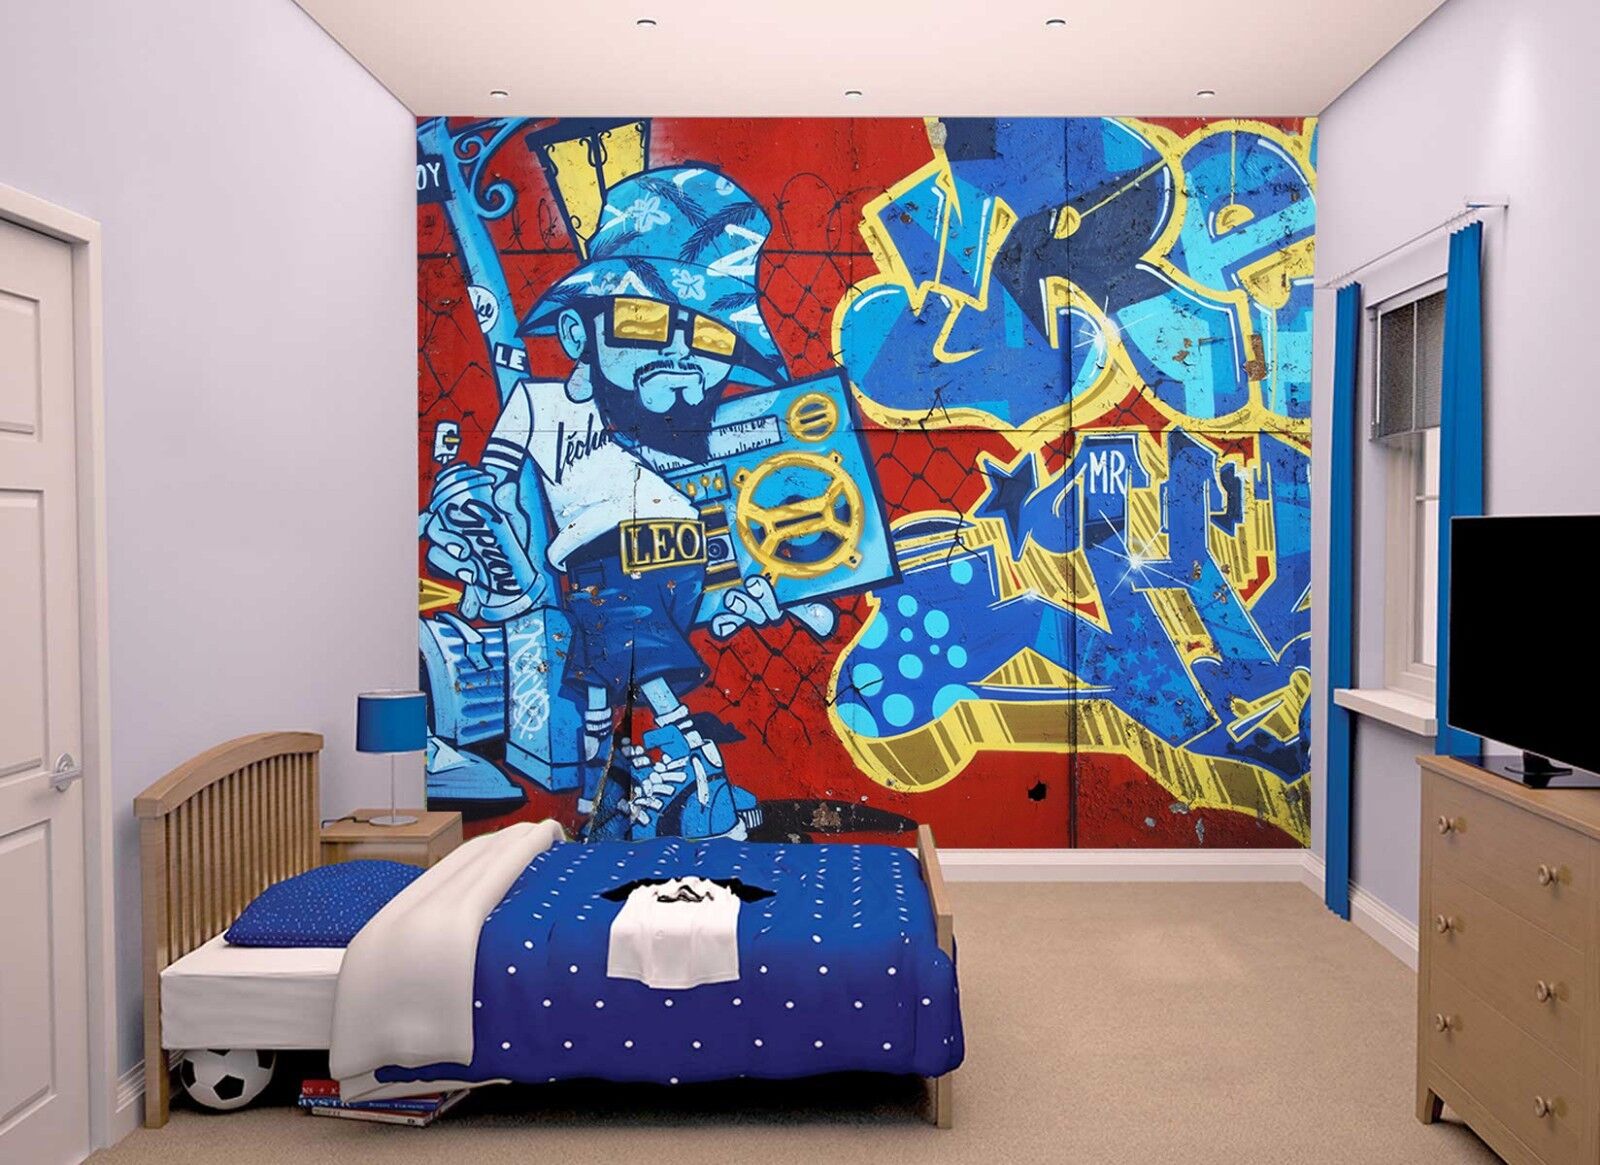 Details Zu Graffiti Wallpaper Mural Photo Wall Street Art Home Boy Teen Room Poster Decor A